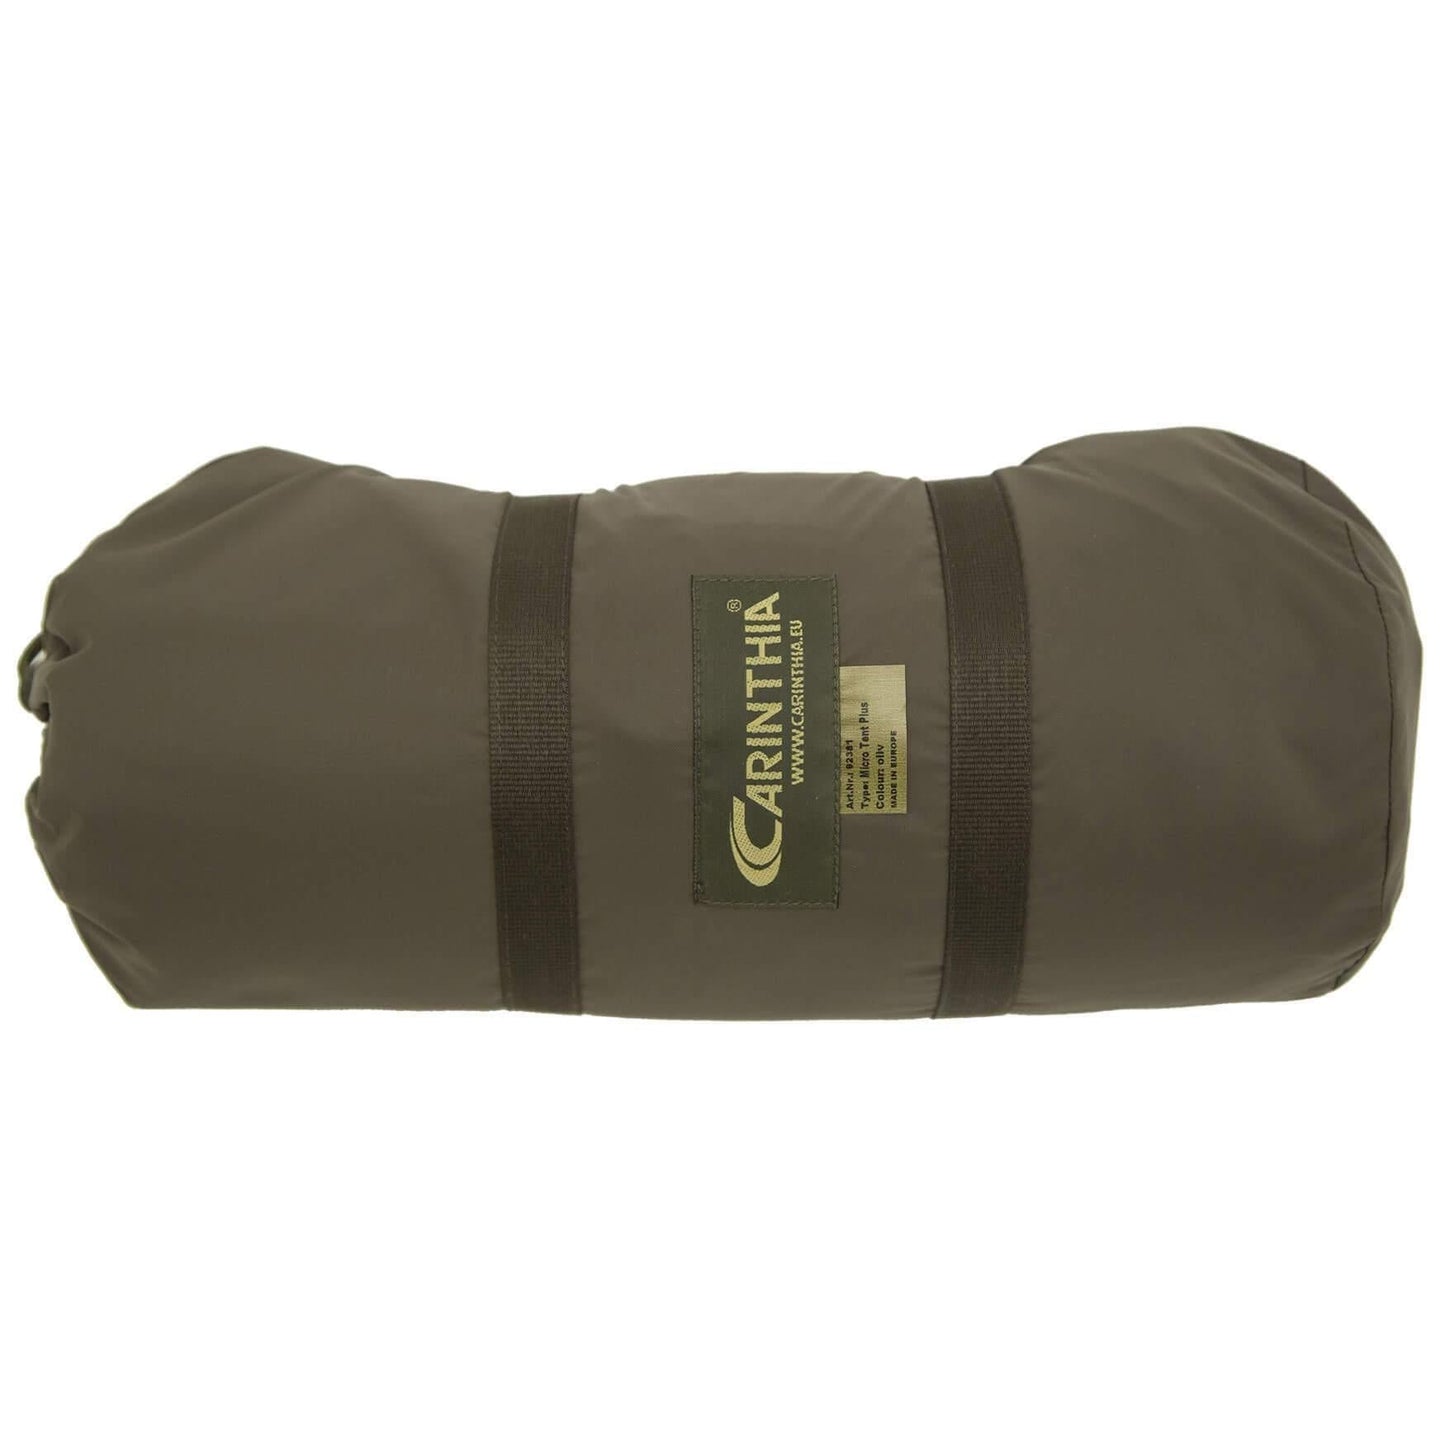 Carinthia Micro Tent Plus Bivy Bag (Bivy bags) från Carinthia. | TacNGear - Utrustning för polis och militär och outdoor.